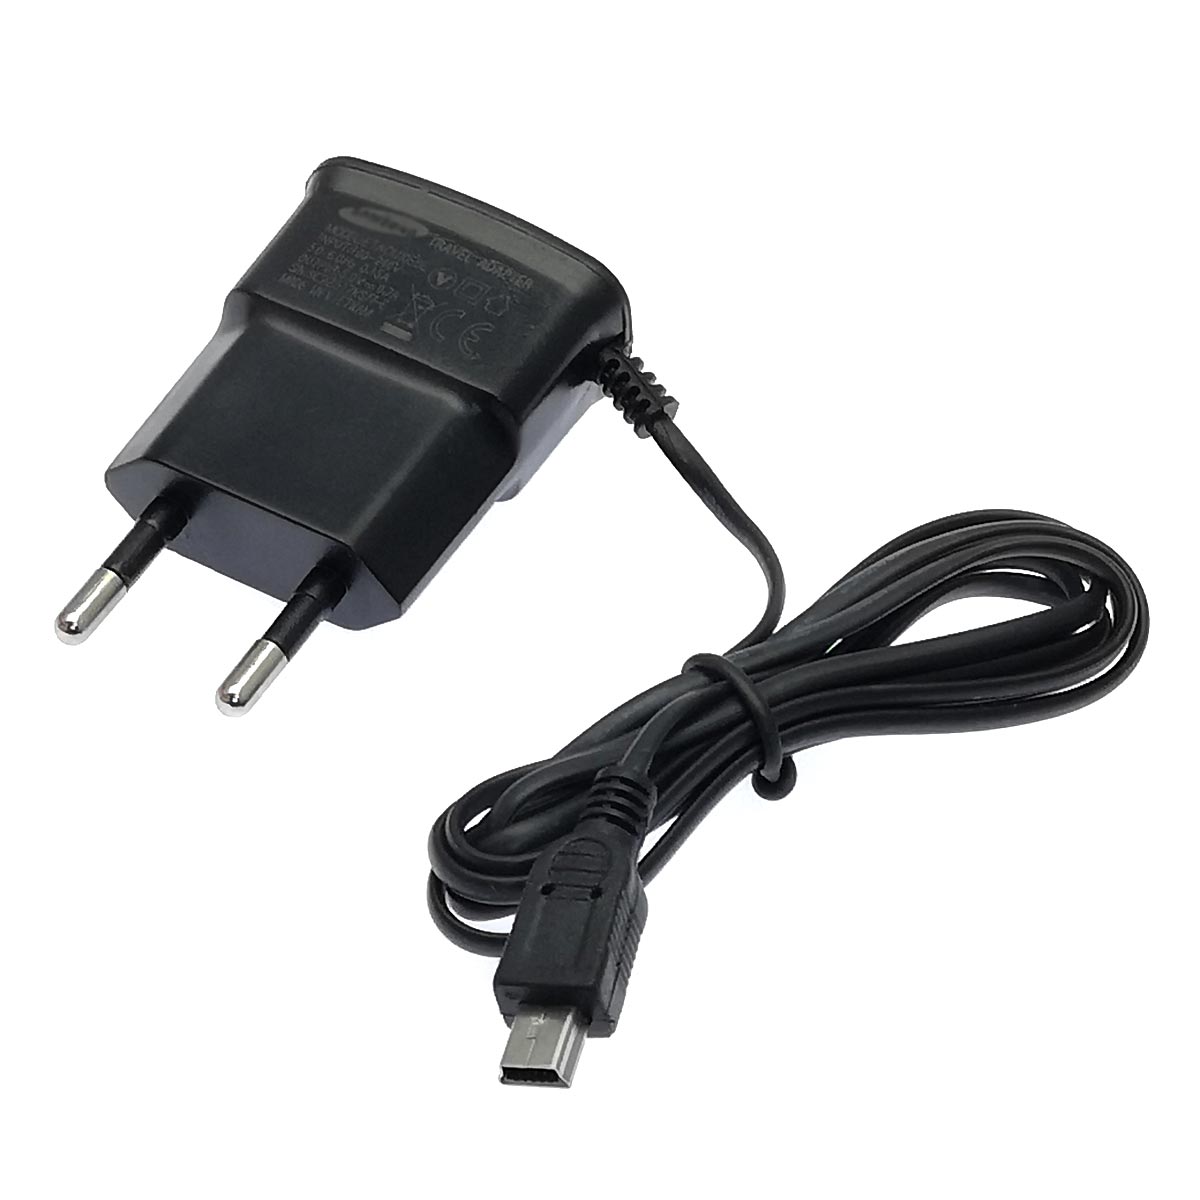 СЗУ (Сетевое зарядное устройство) ETAOU10EBE с кабелем Mini USB, длина 1 метр, цвет черный